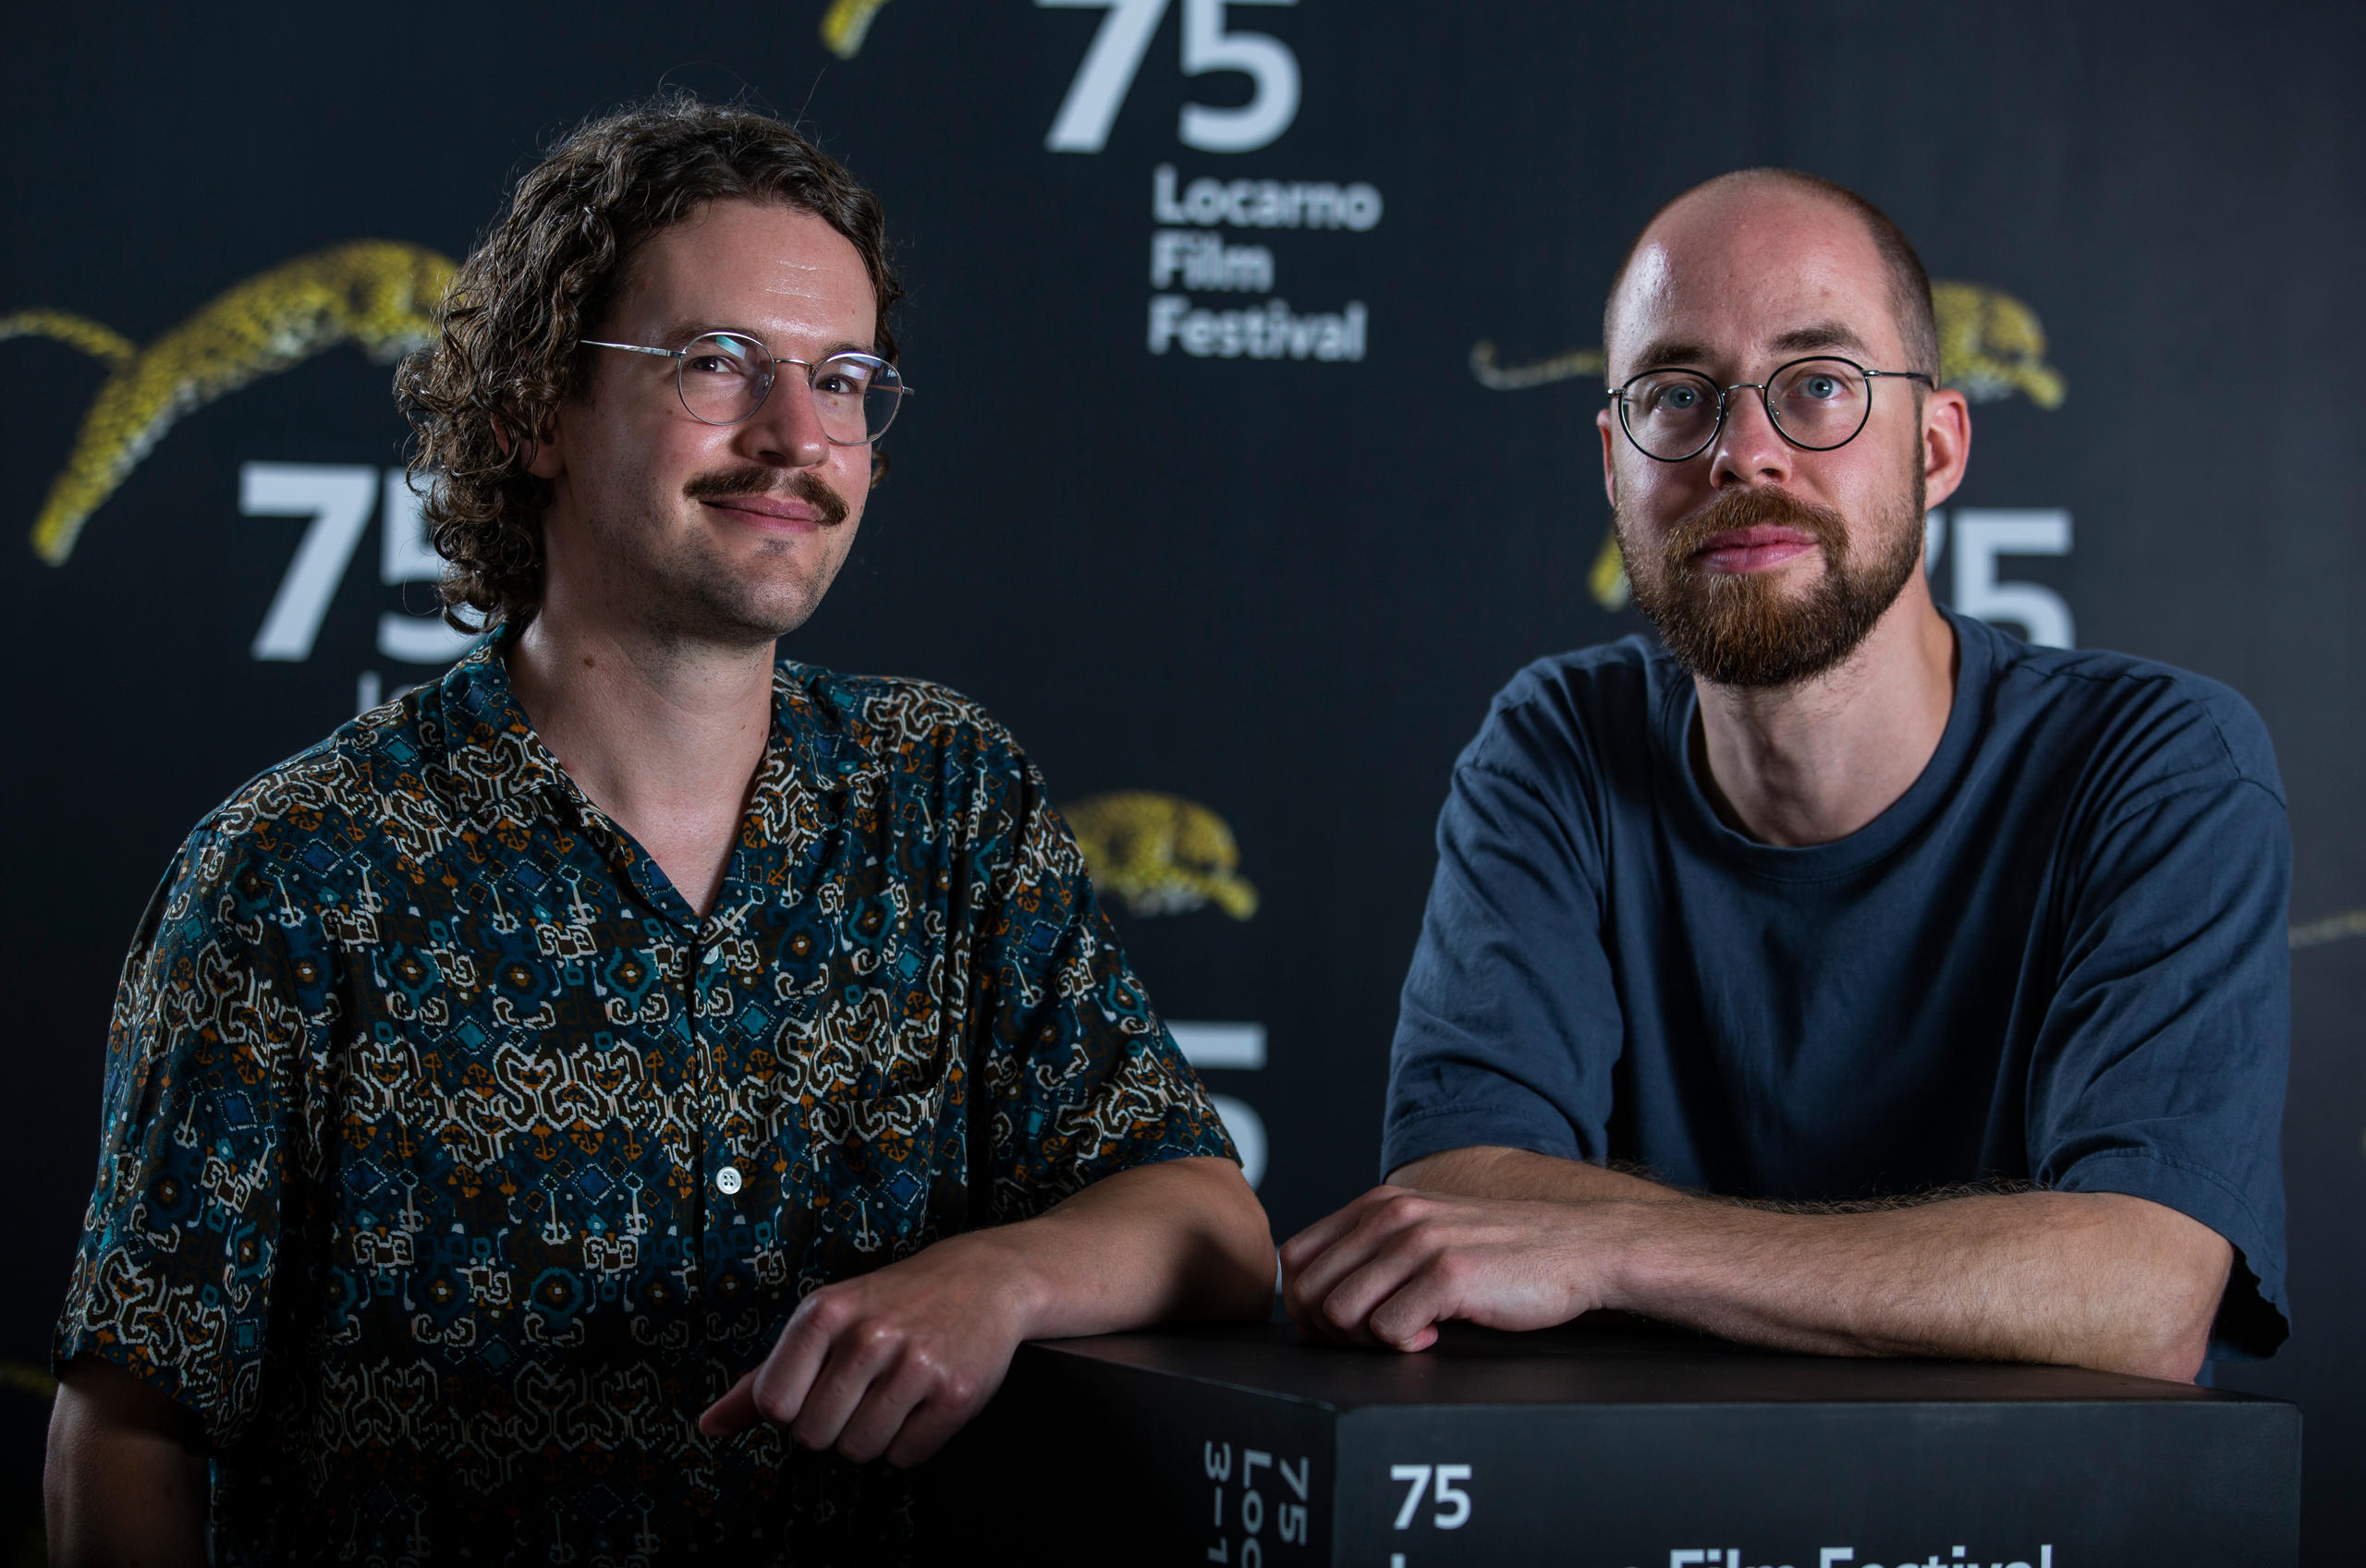 The directors of Der Molchkongress in Locarno Film Festival